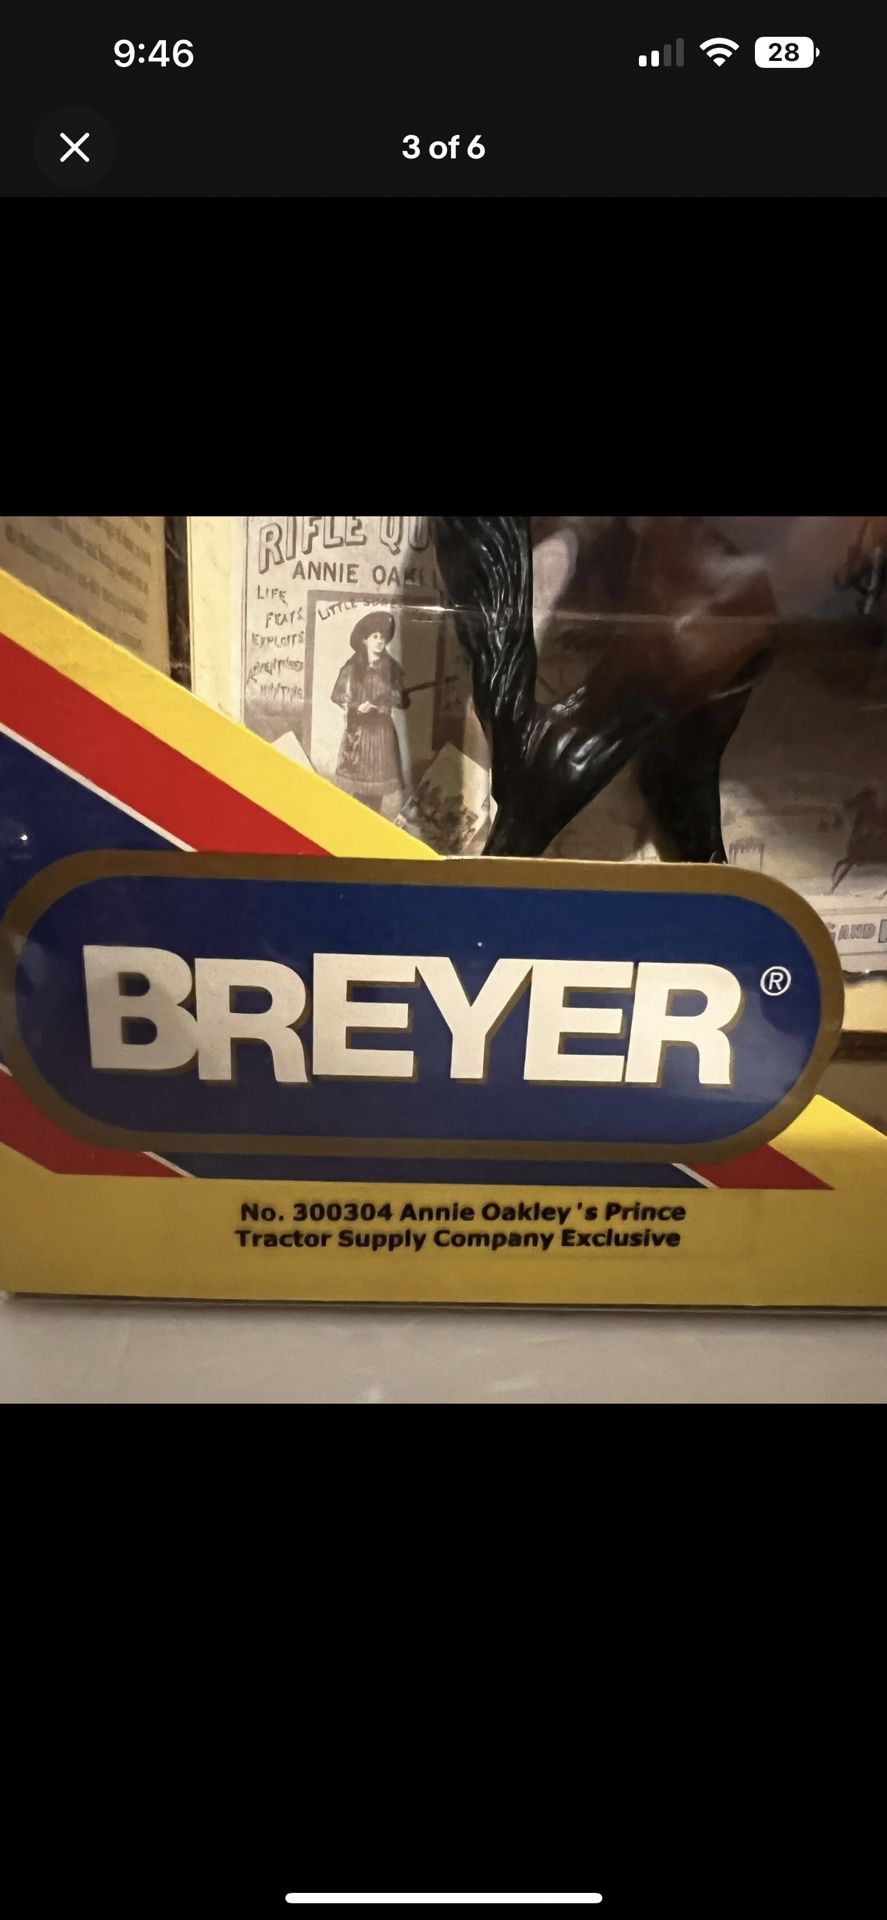 Breyer 2002 Tractor Supply Company Exclusive No 300304 Annie Oakley's Prince 1:9